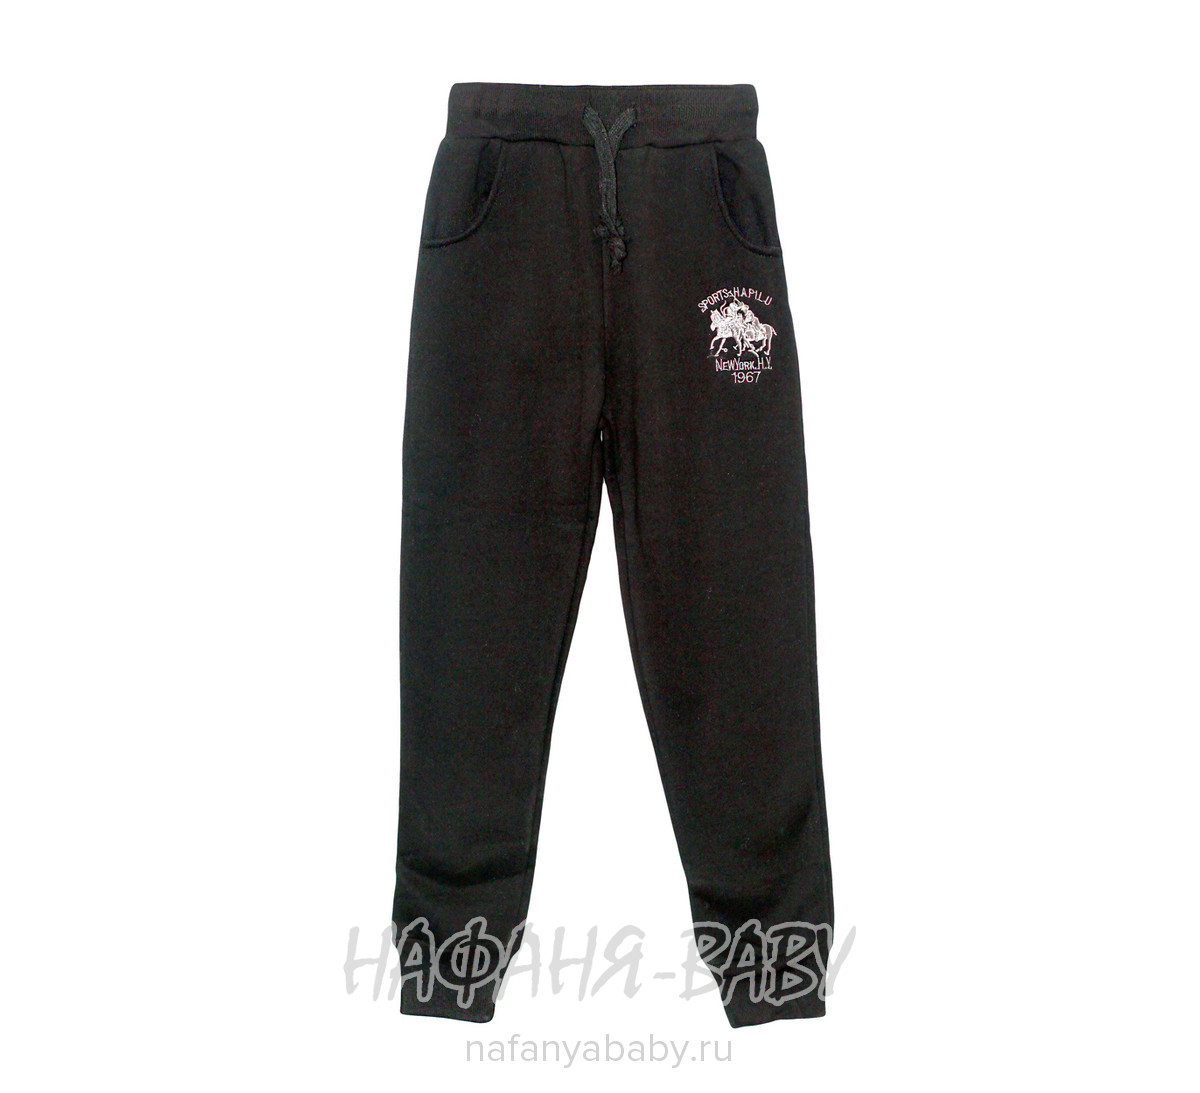 Детские трикотажные брюки с начесом  VIVID BASIC, купить в интернет магазине Нафаня. арт: 2096.